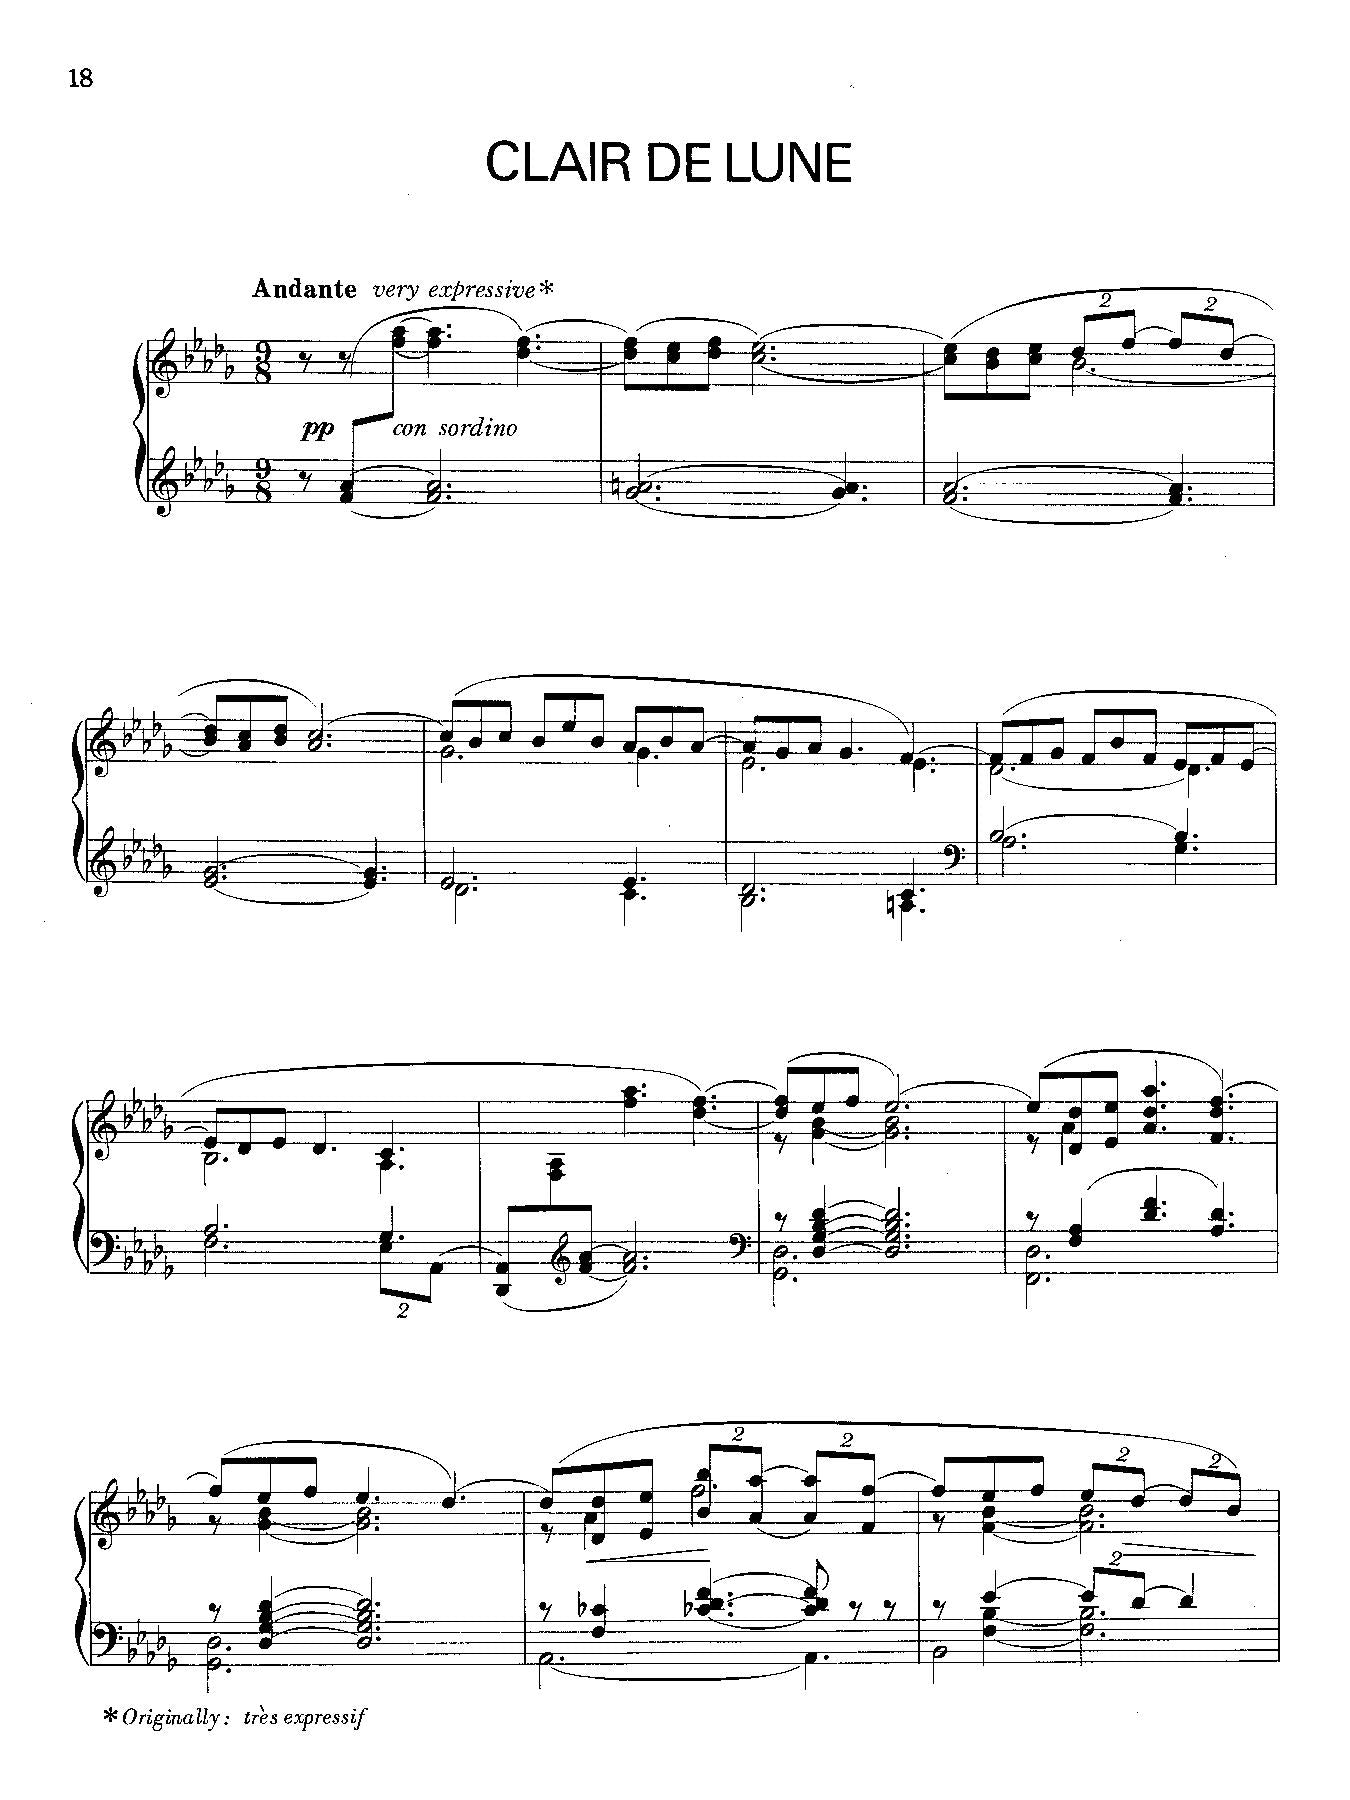 Debussy: Suite Bergamasque